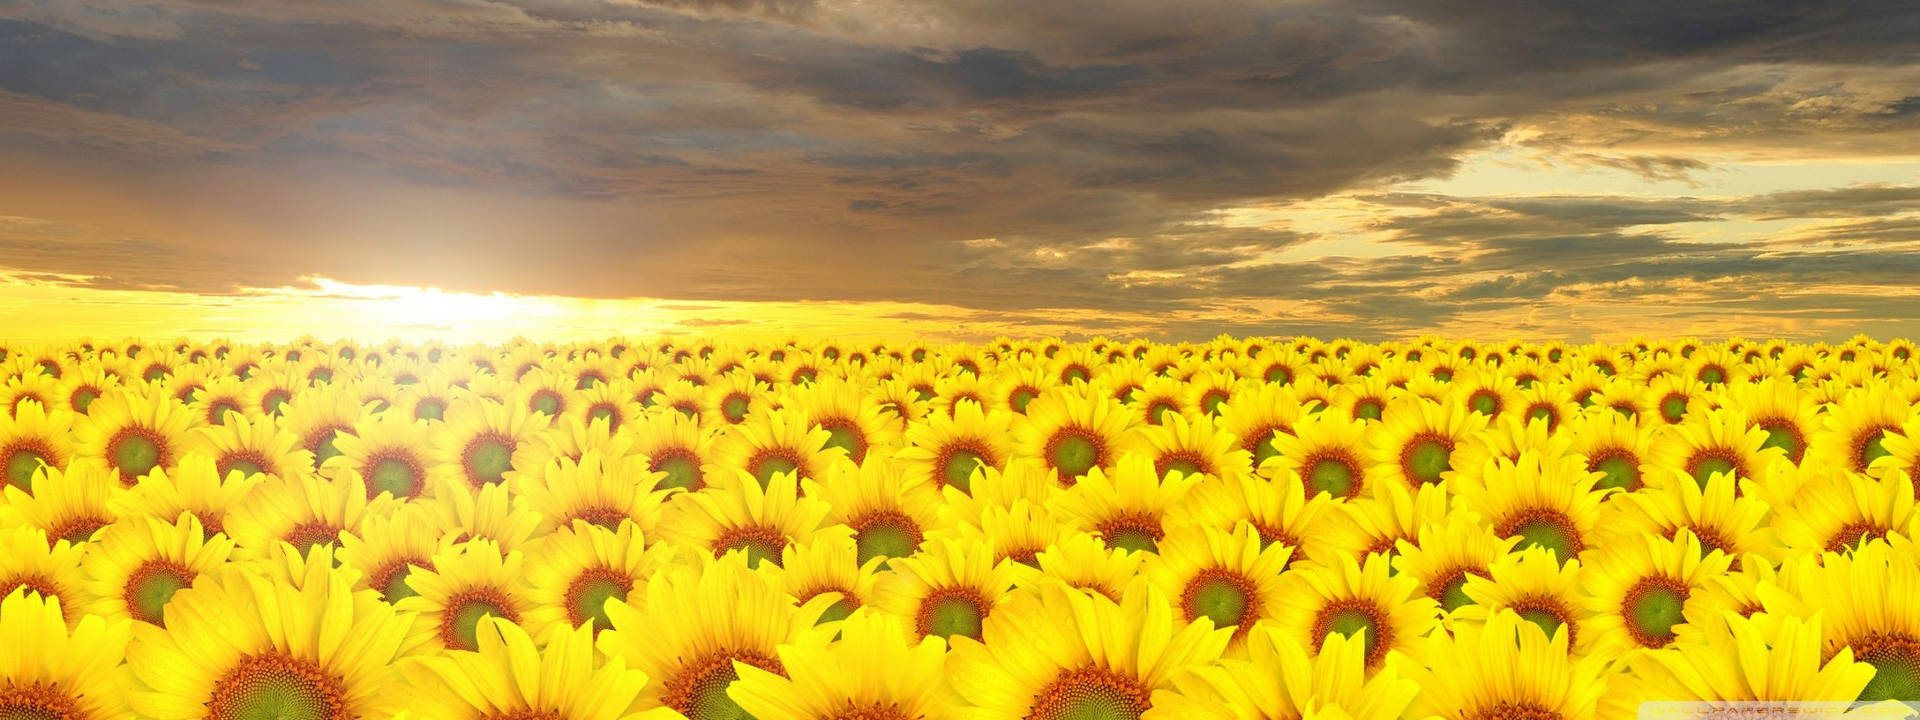 Sunflower Field Digital Art Wallpaper